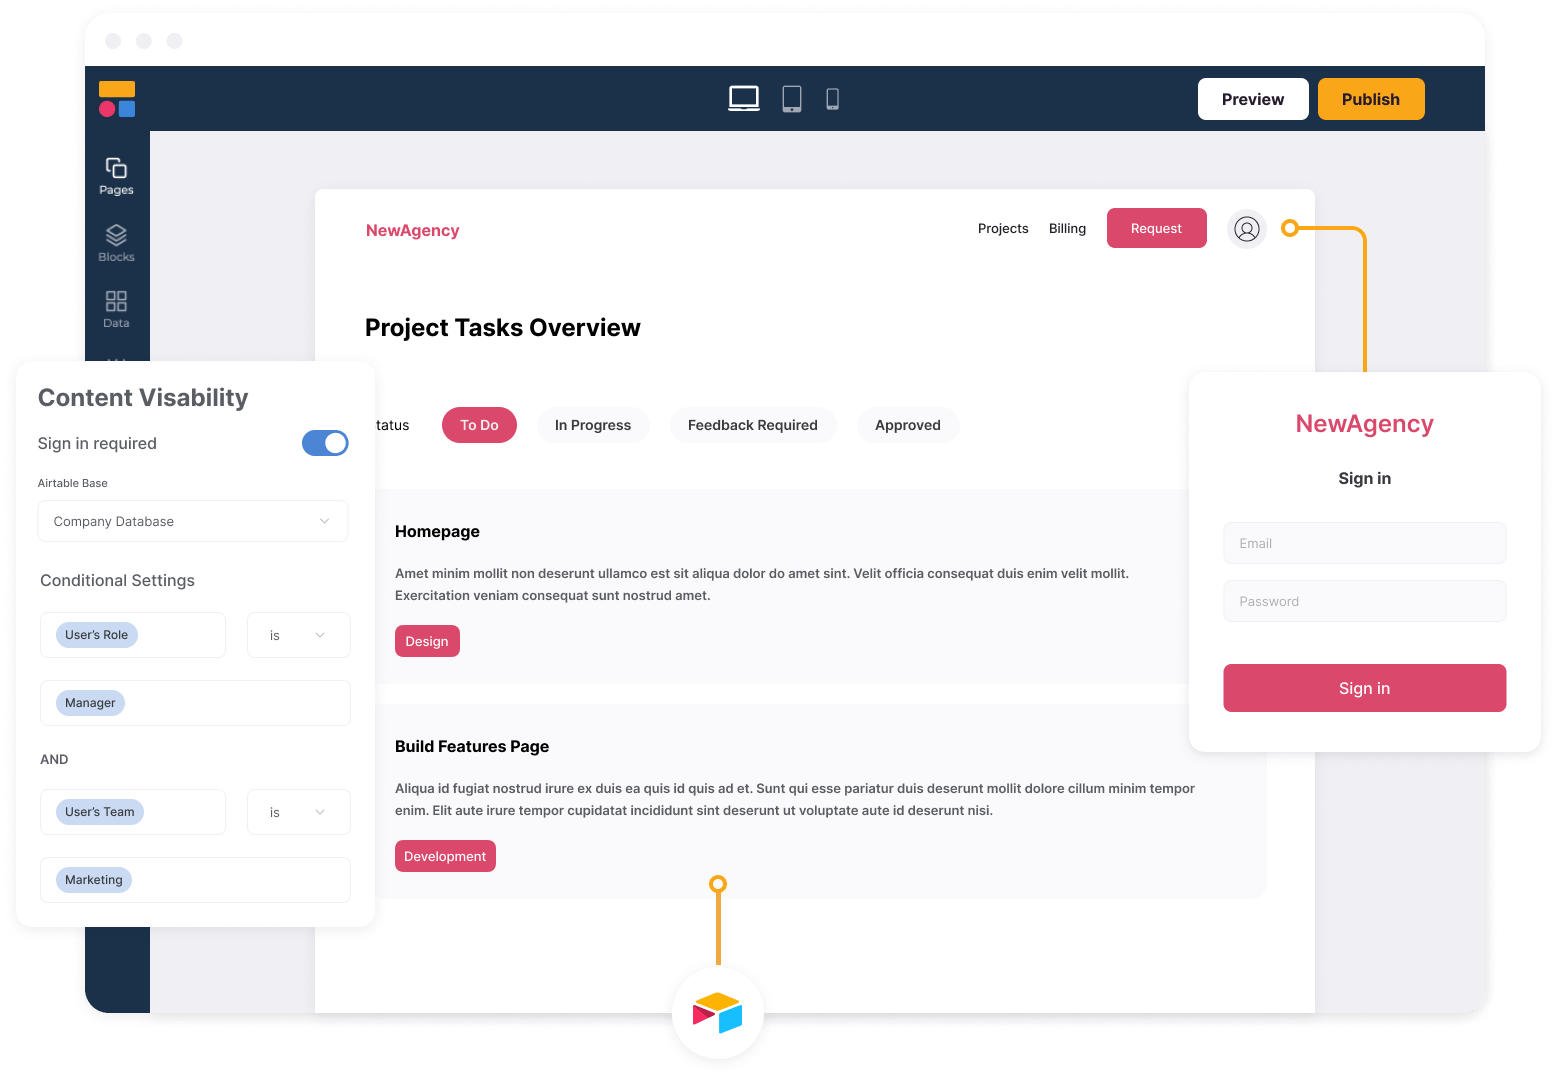 zendesk client portal